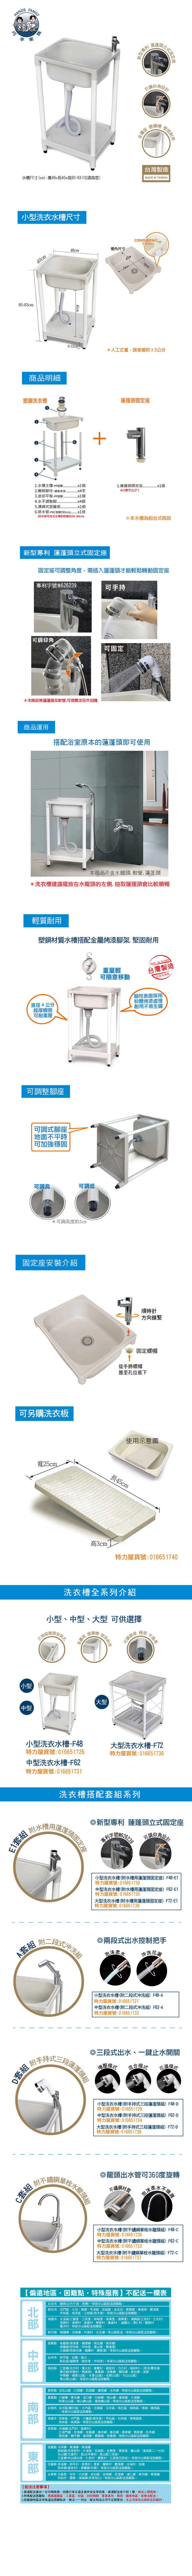 小型洗衣水槽(附蓮蓬頭固定座) F48-E1